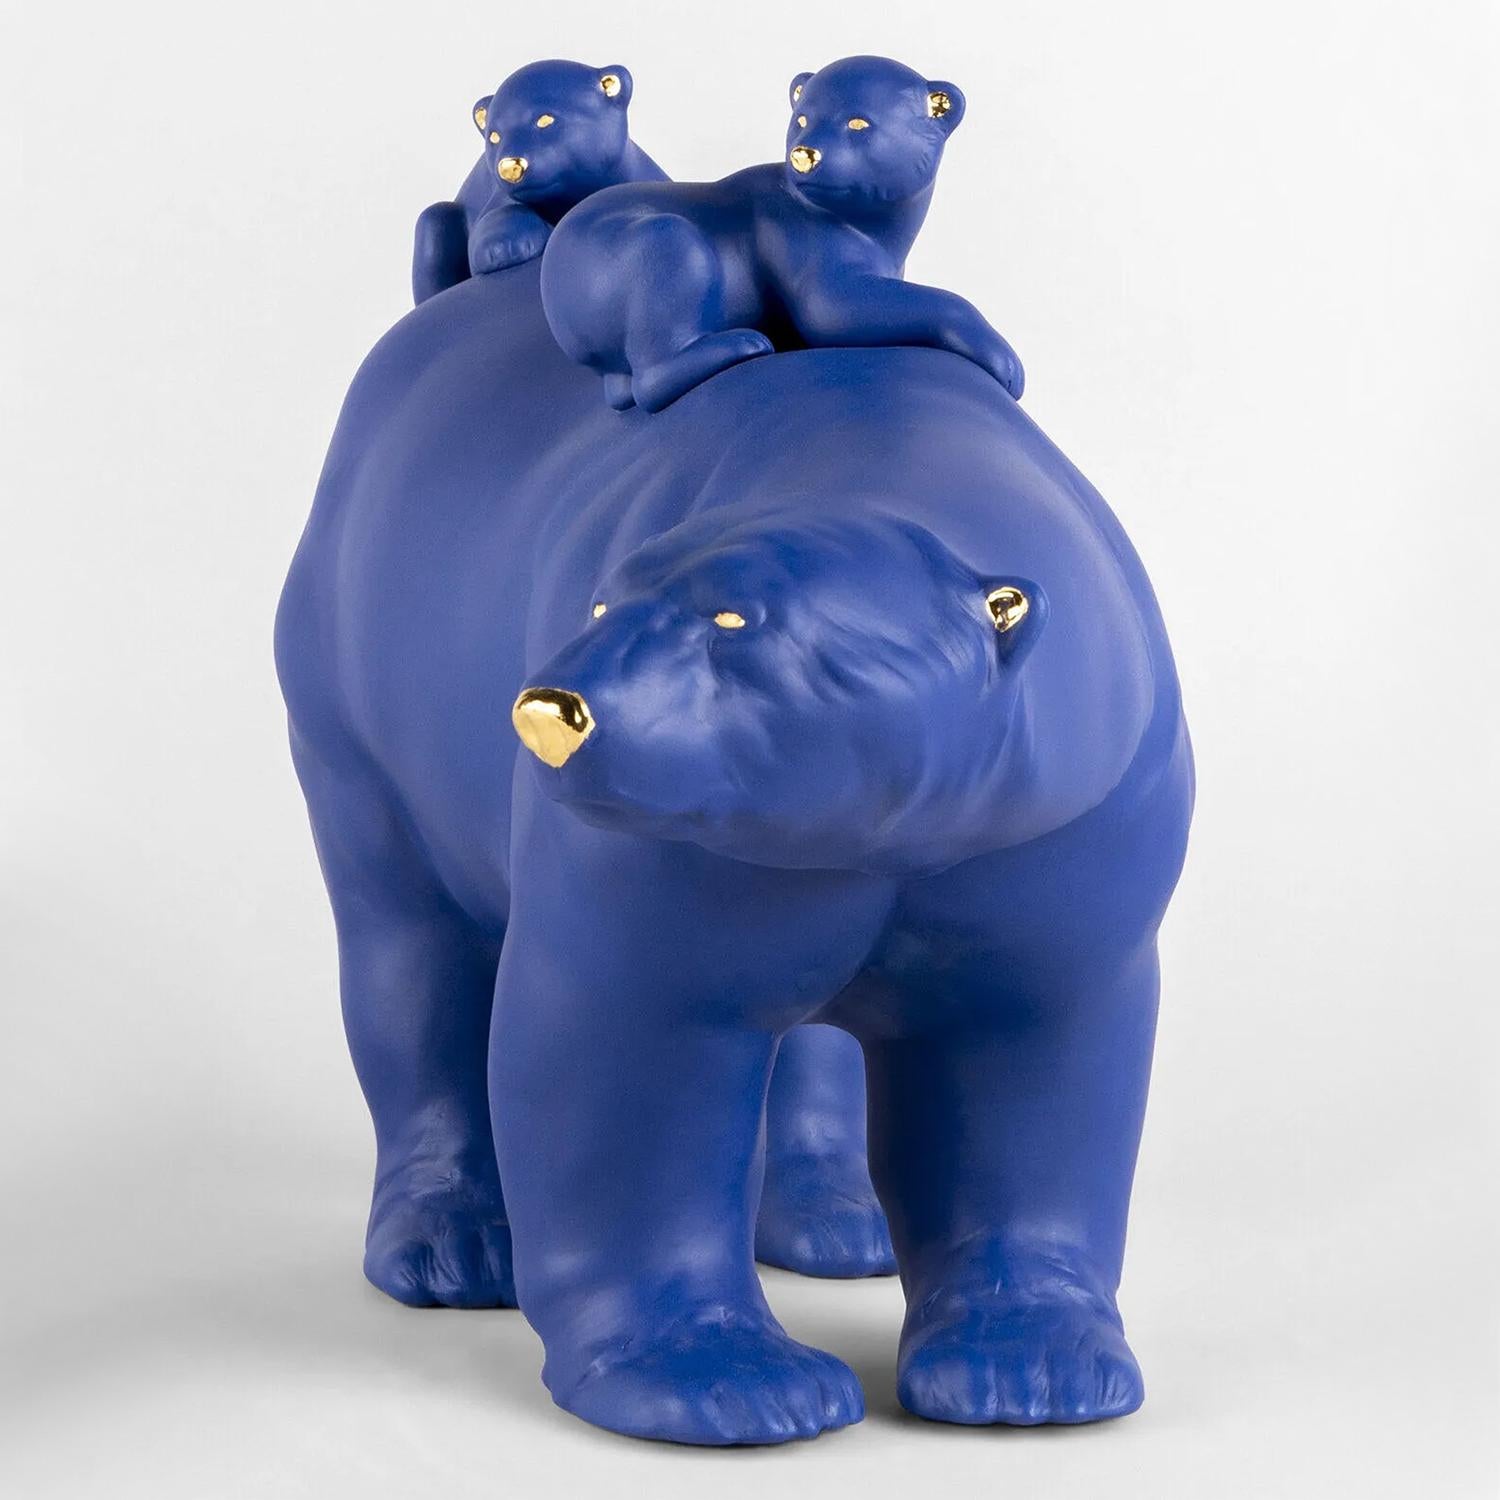 Skulptur Eisbär-Familie mit aller Struktur in 
Porzellan in blau-matter und gold-glänzender Ausführung.